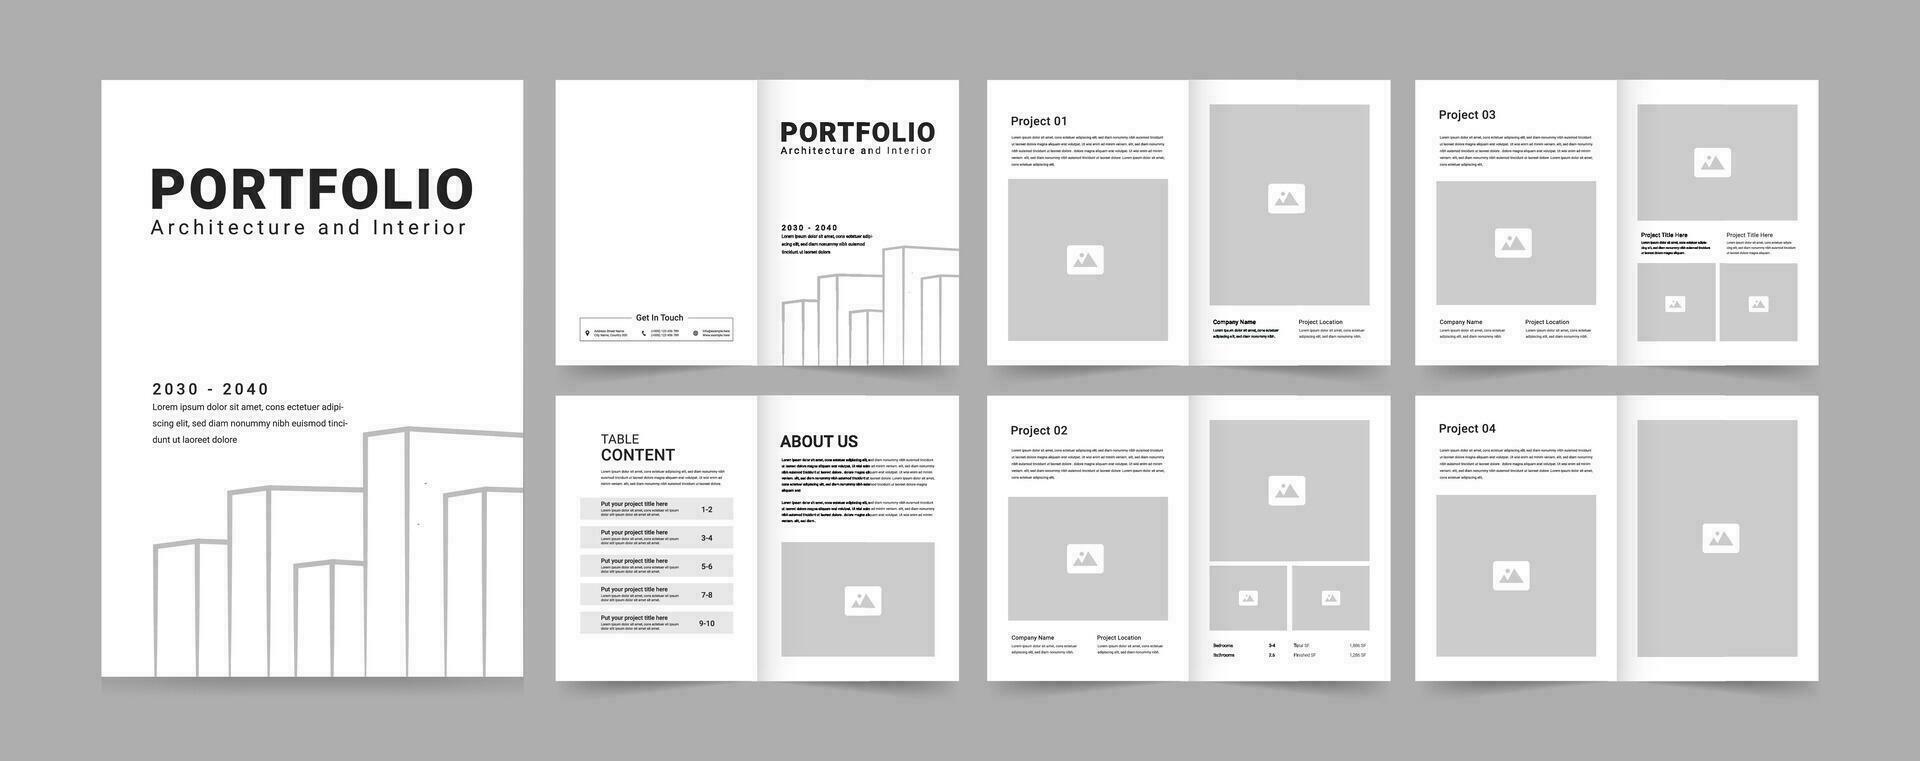 Architecture Portfolio or Portfolio Template Design vector